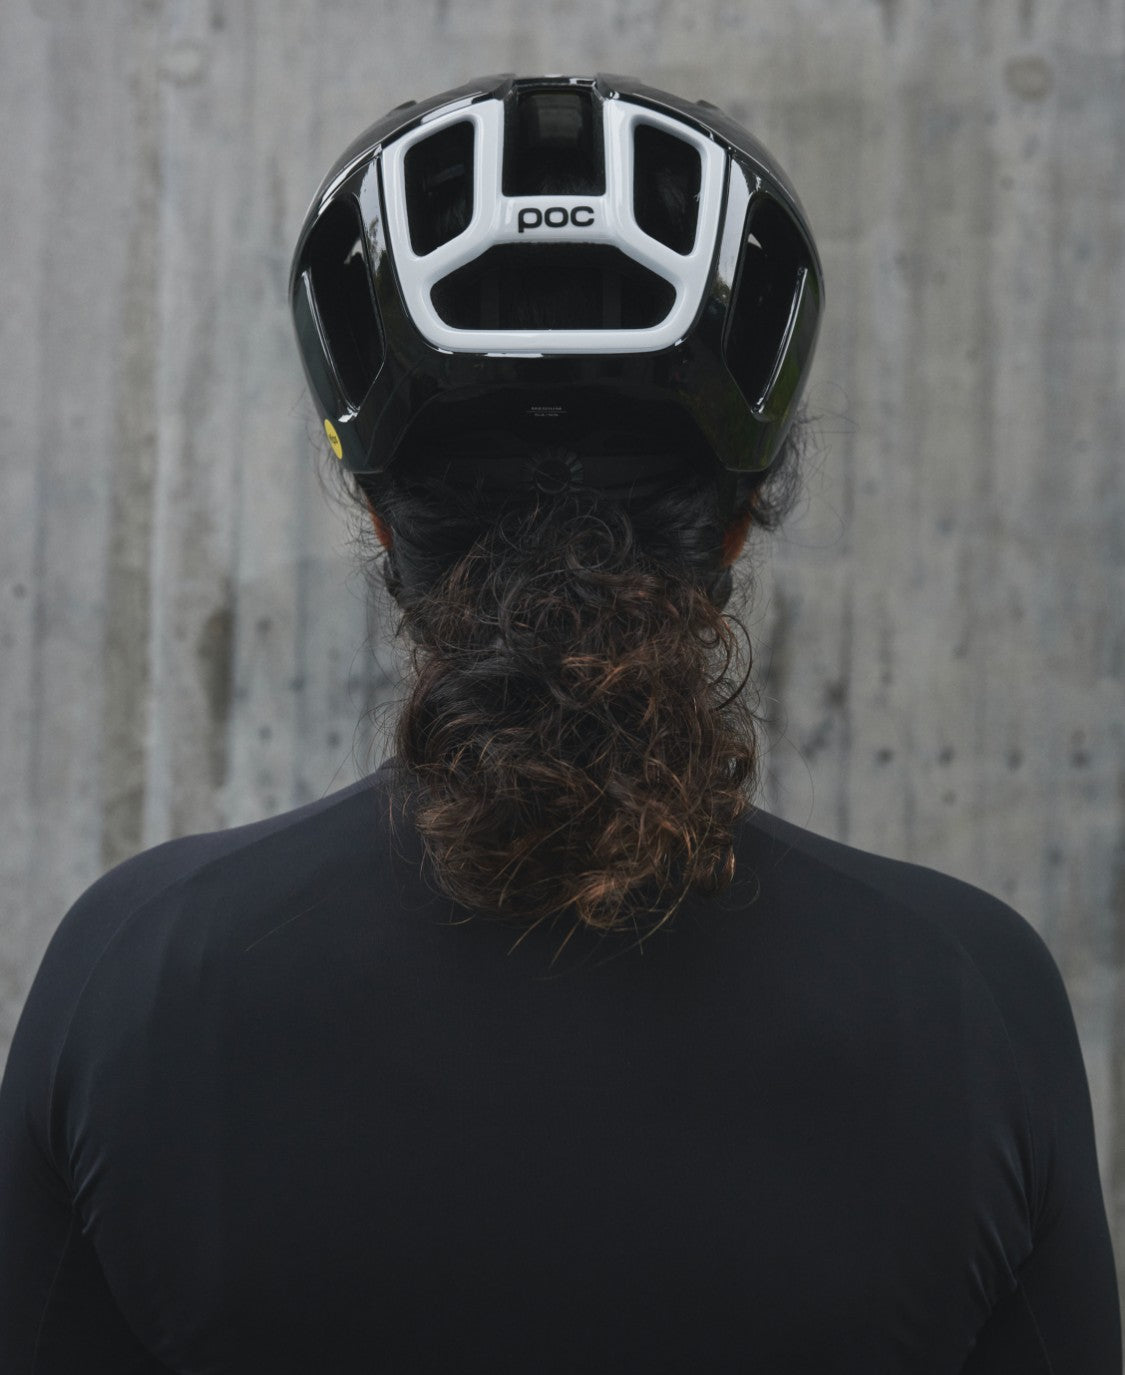 POC Ventral Road Cycling Helmet (Uranium Black)